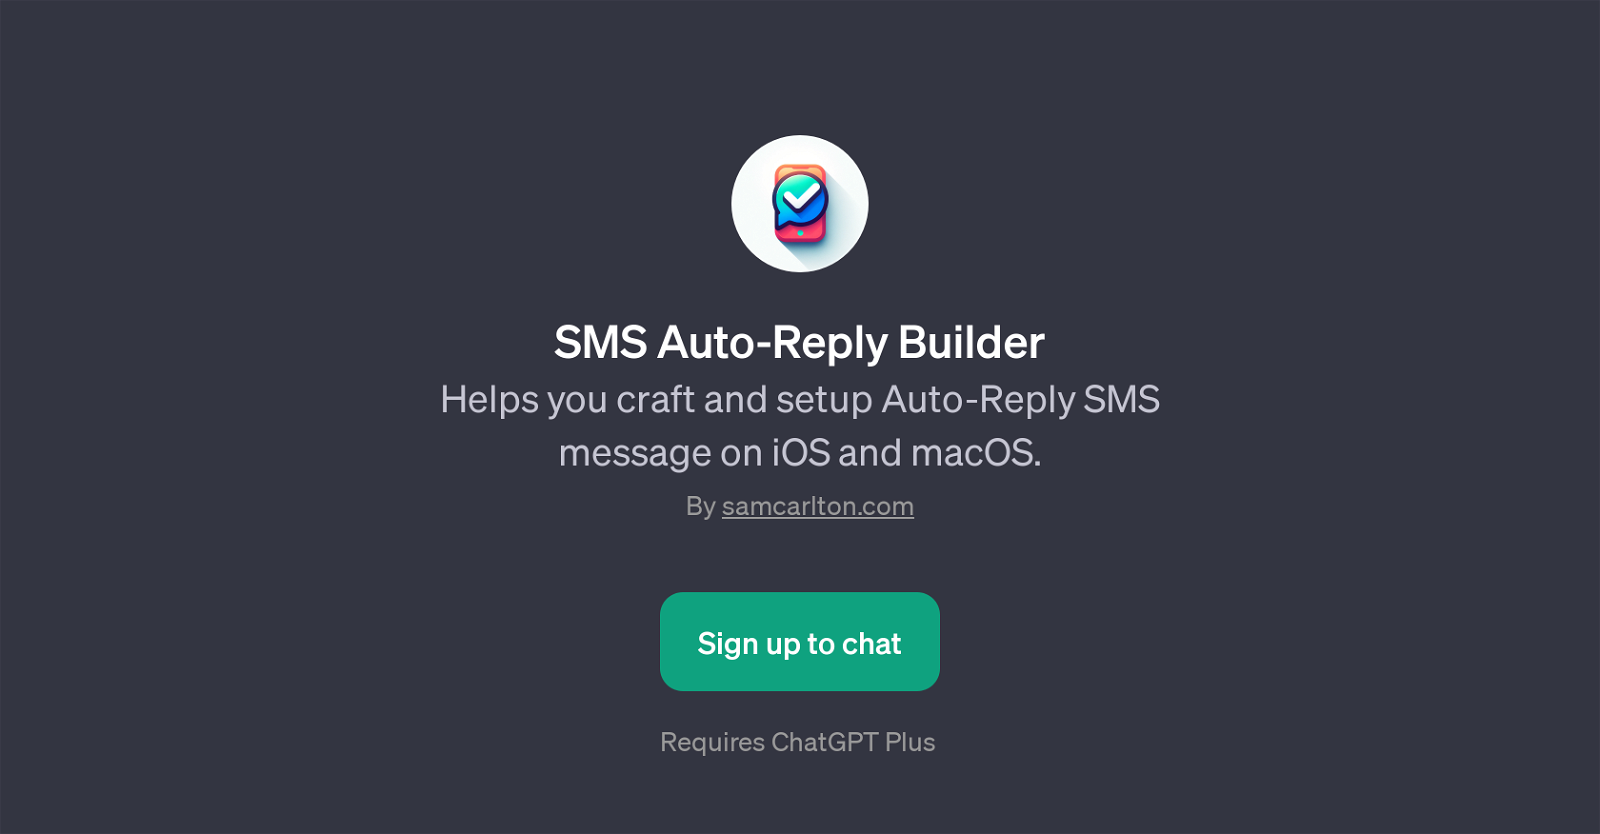 SMS Auto-Reply Builder website